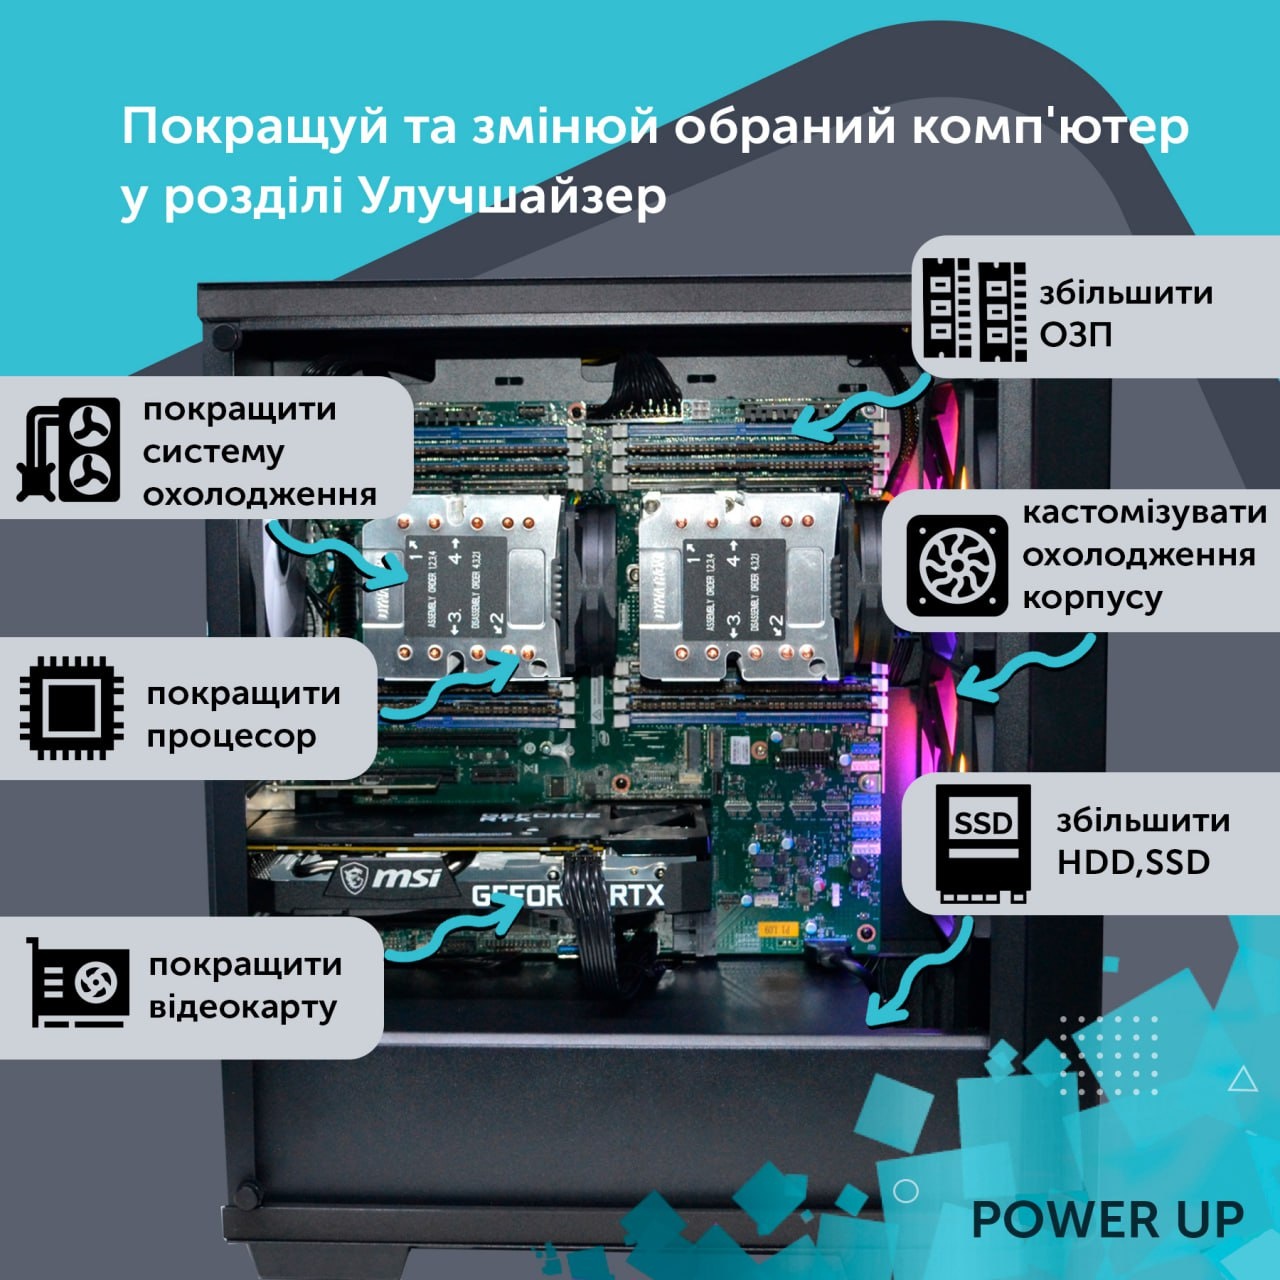 Робоча станція PowerUp Desktop #24 Core i7 10700K/16GB/HDD 1TB/SSD 256GB/GeForce GTX 1660Ti 6GB